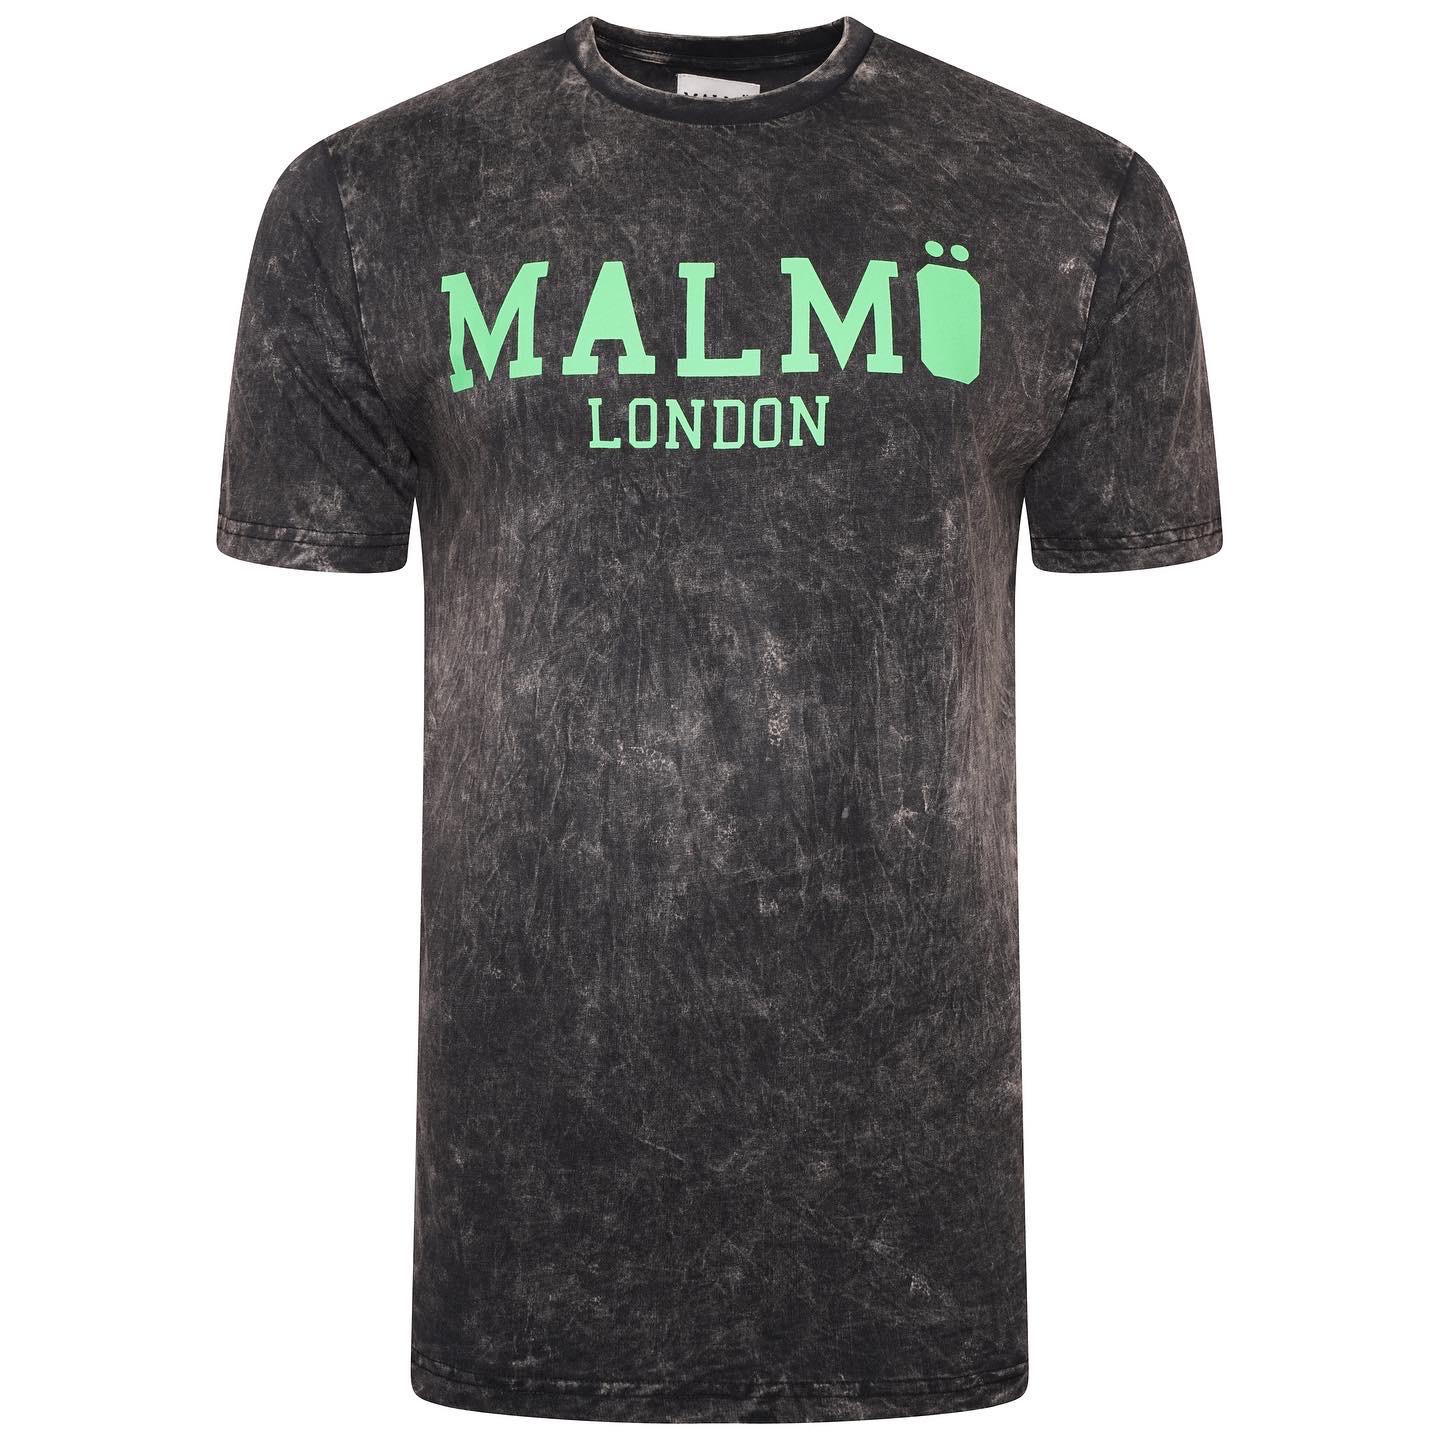 Malmo London White Tshirt